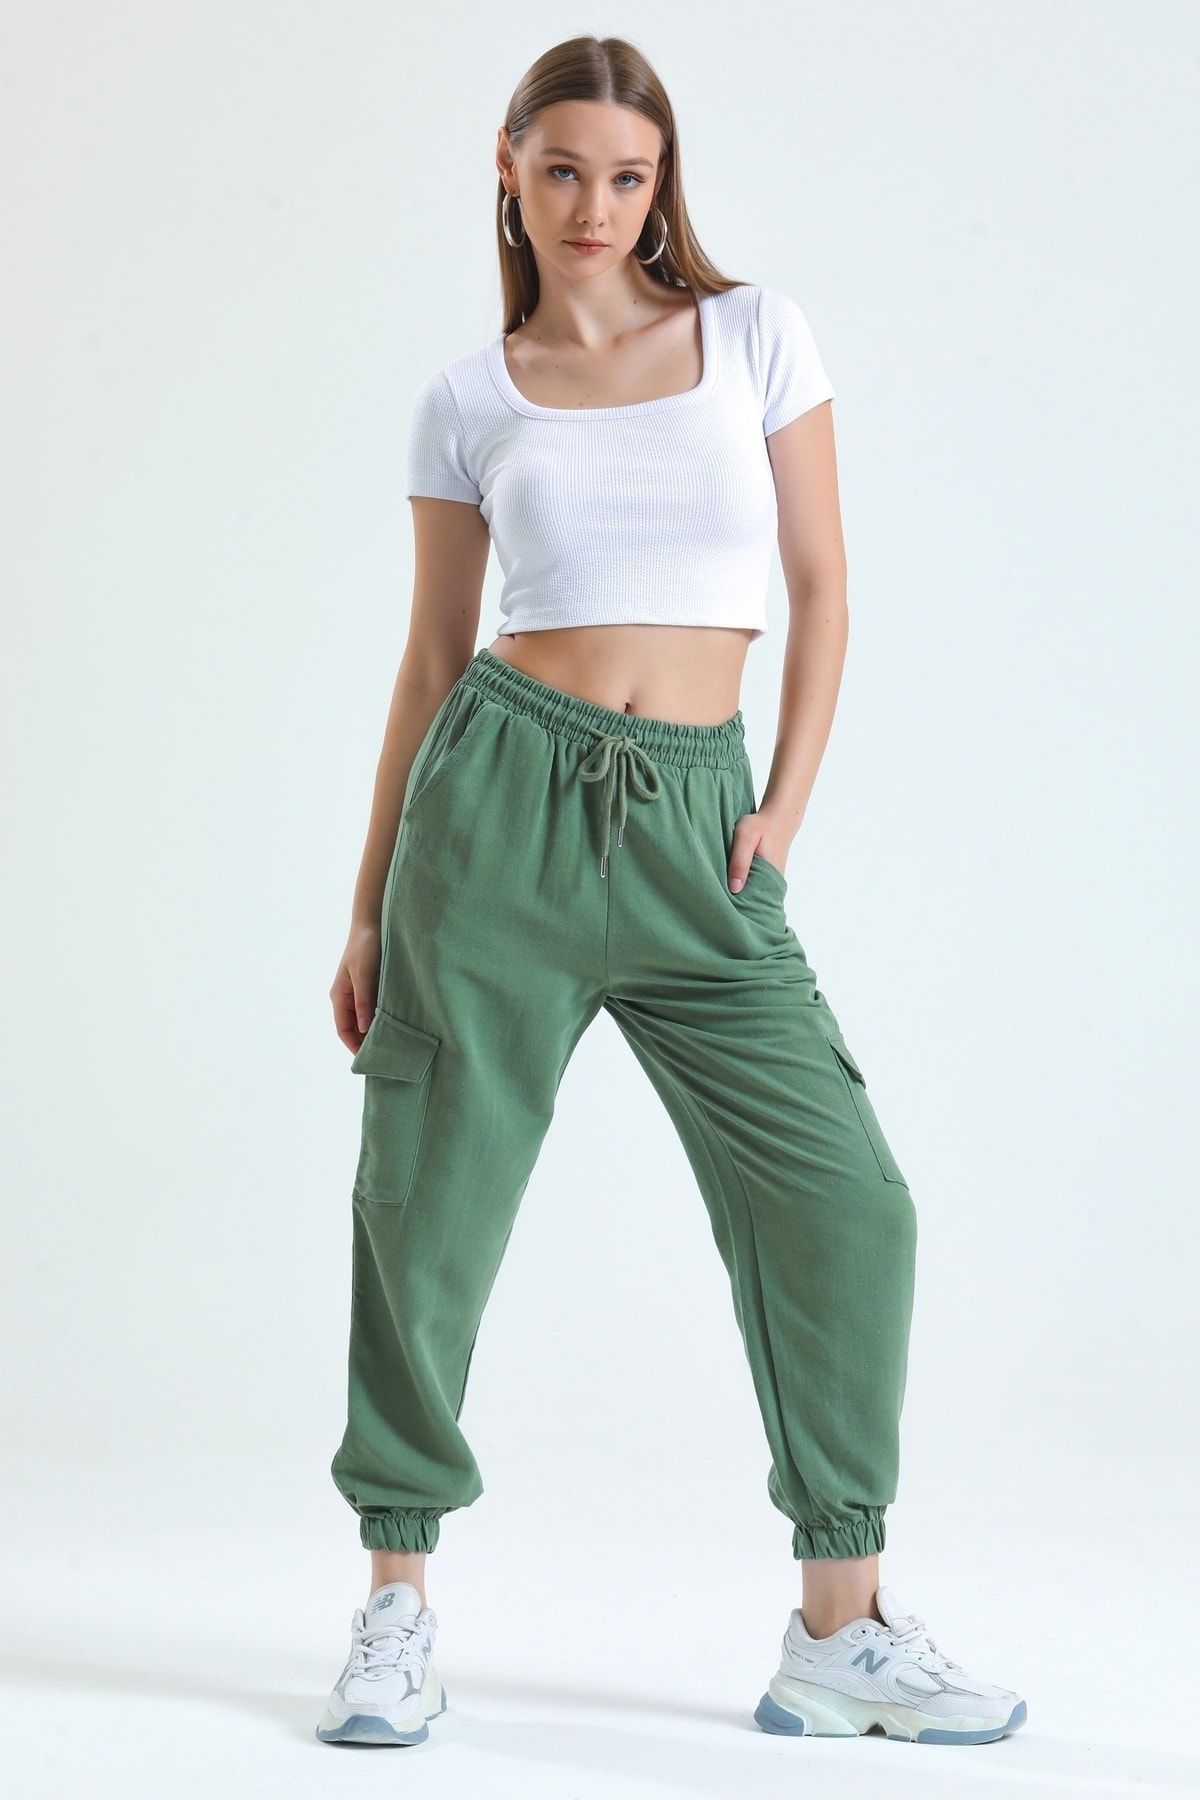 MD trend Kadın Mint Yeşil Kargo Cepli Bel Lastikli Bağcıklı Jogger Keten Pantolon